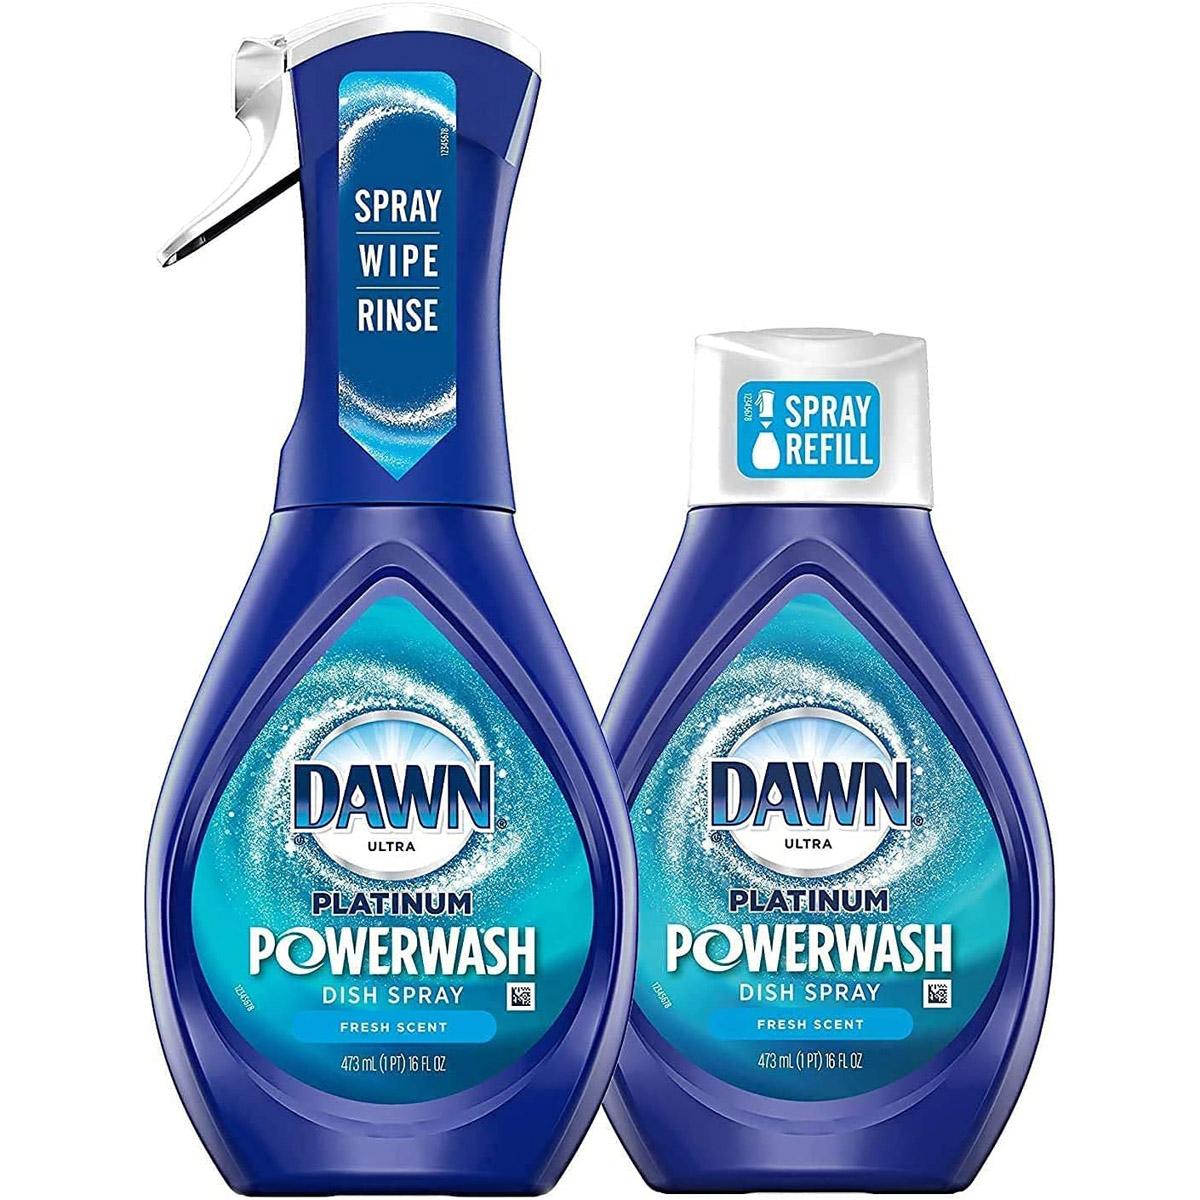 Dawn Powerwash Fresh Scent Spray Starter Kit for $5.94